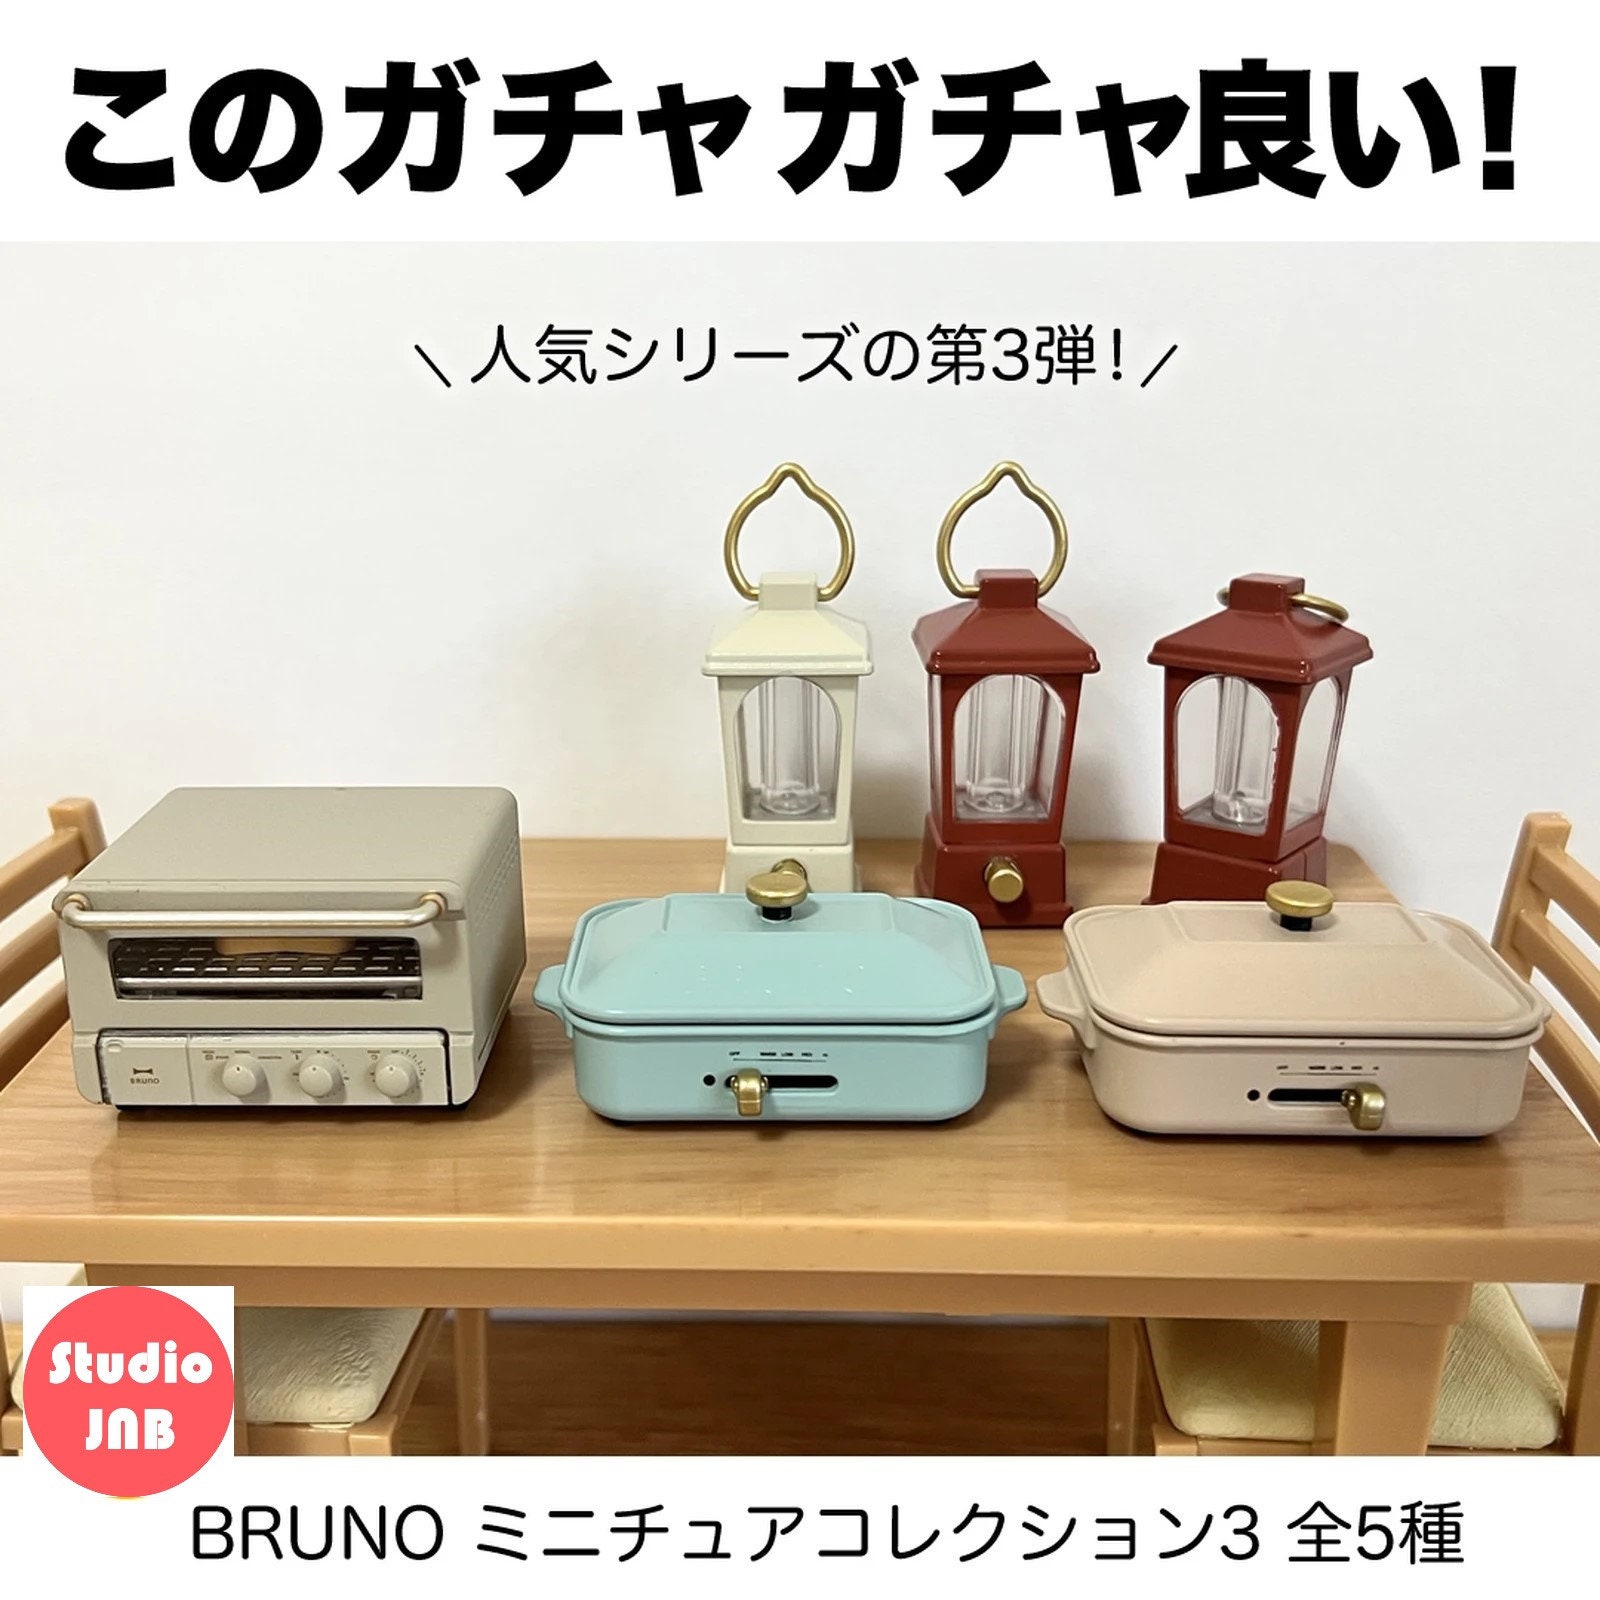 休み BRUNO ミニチュアコレクション3 全5種セット フルコンプ ガチャガチャ カプセルトイ